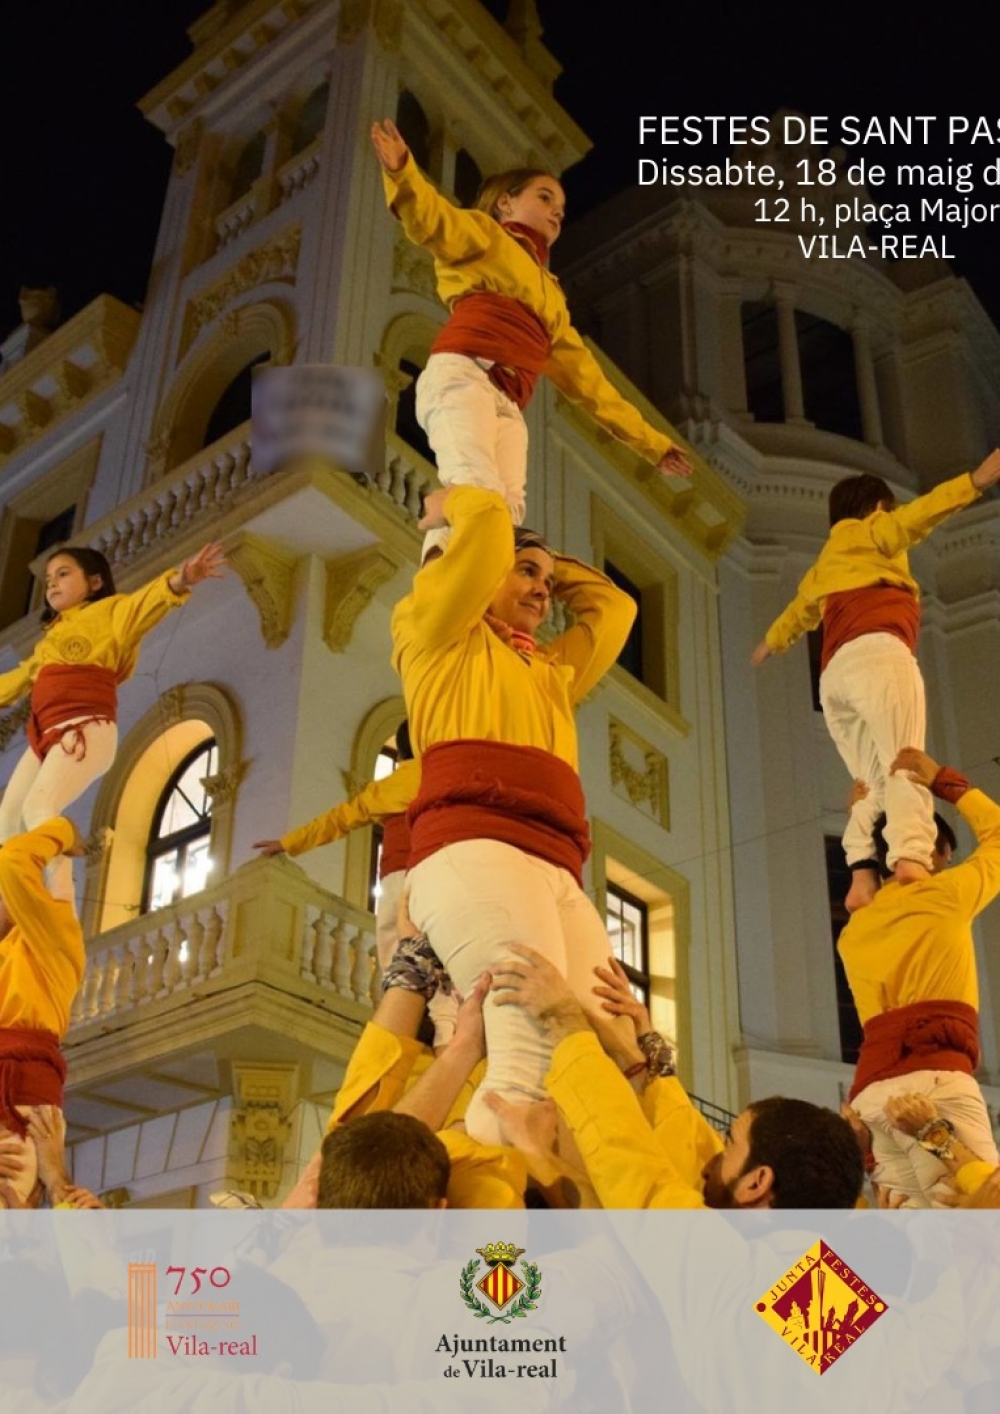 Festes de Sant Pasqual de Vila-real
&nbsp;